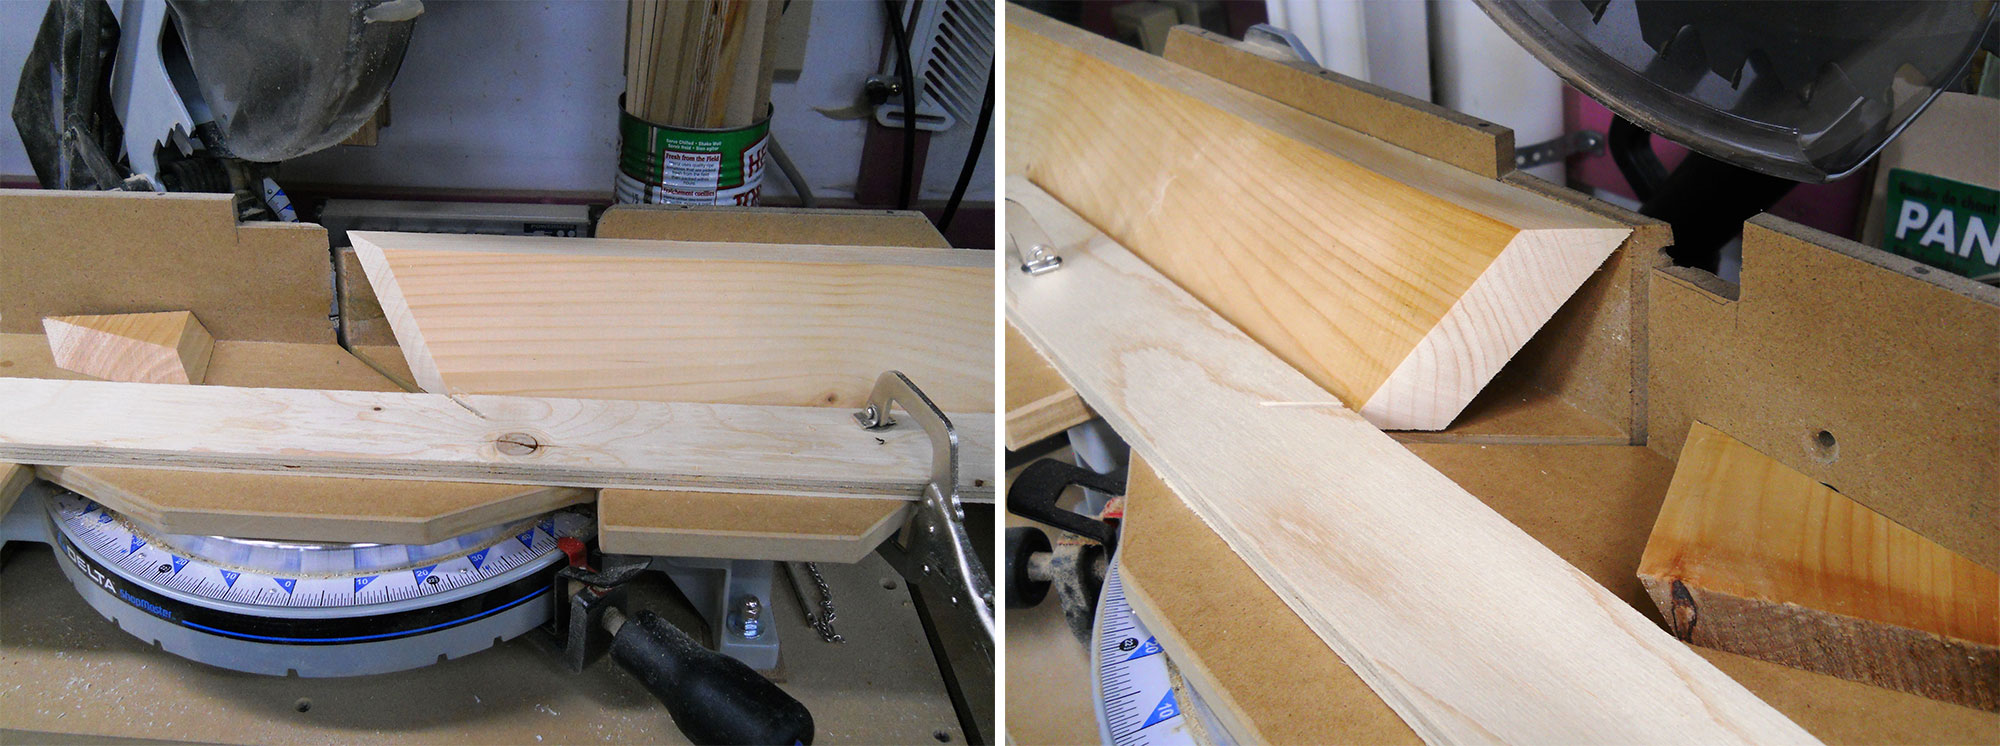 Image de gauche : Coupe d'un angle composé sur une scie à onglets. Image de droite : Installation pour coupe en angle composé.